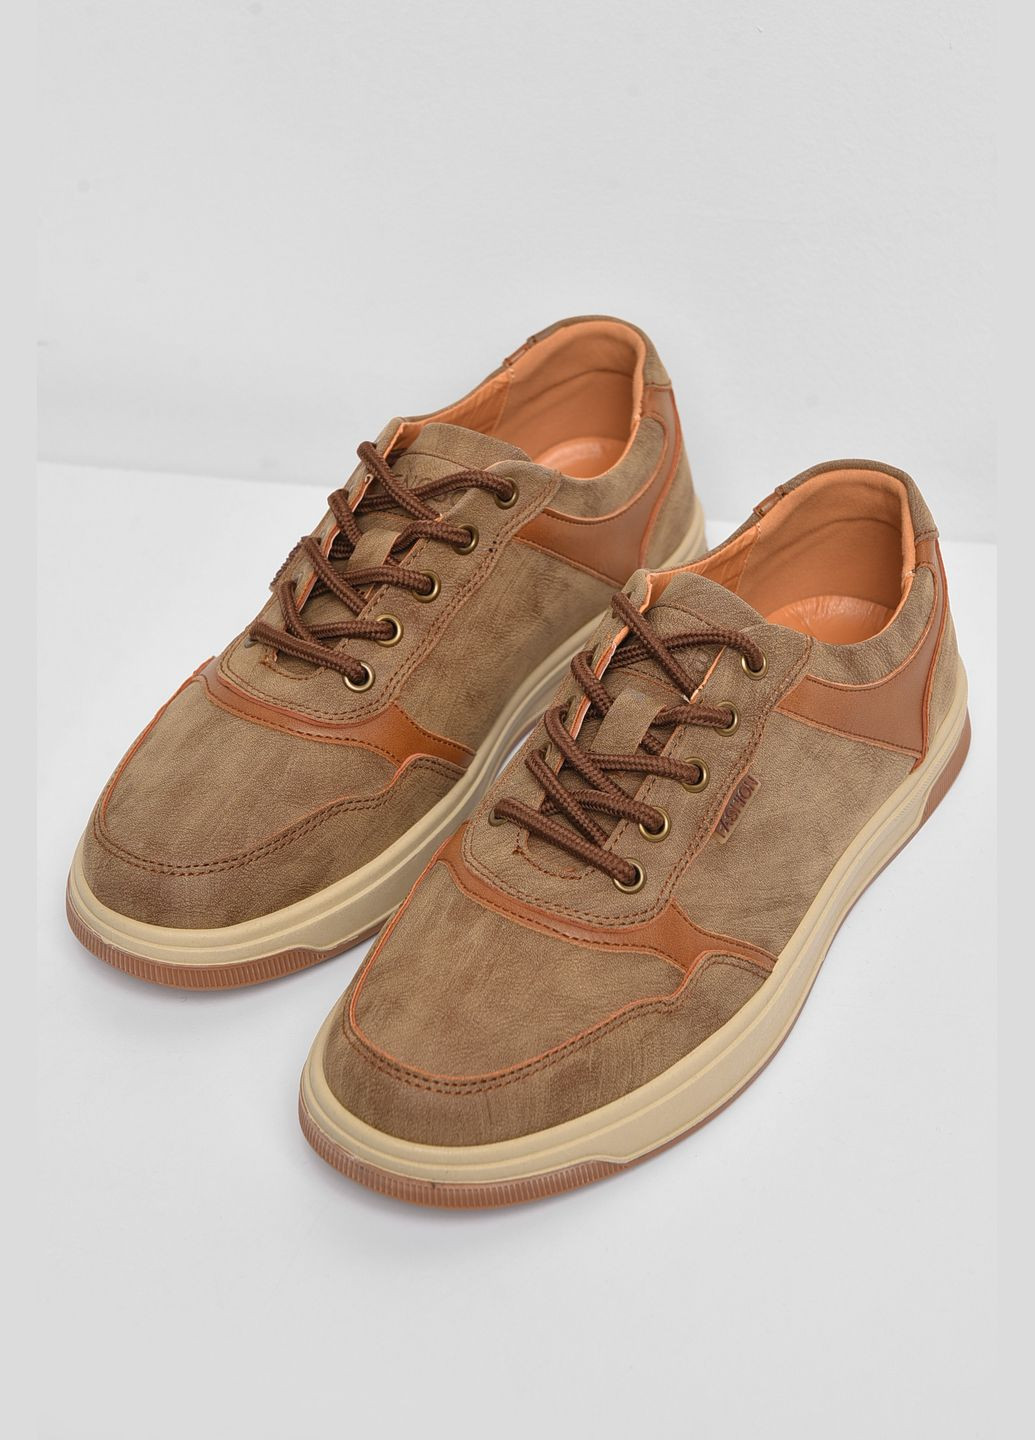 Светло-коричневые демисезонные кроссовки мужские светло-коричневого цвета на шнуровке Let's Shop